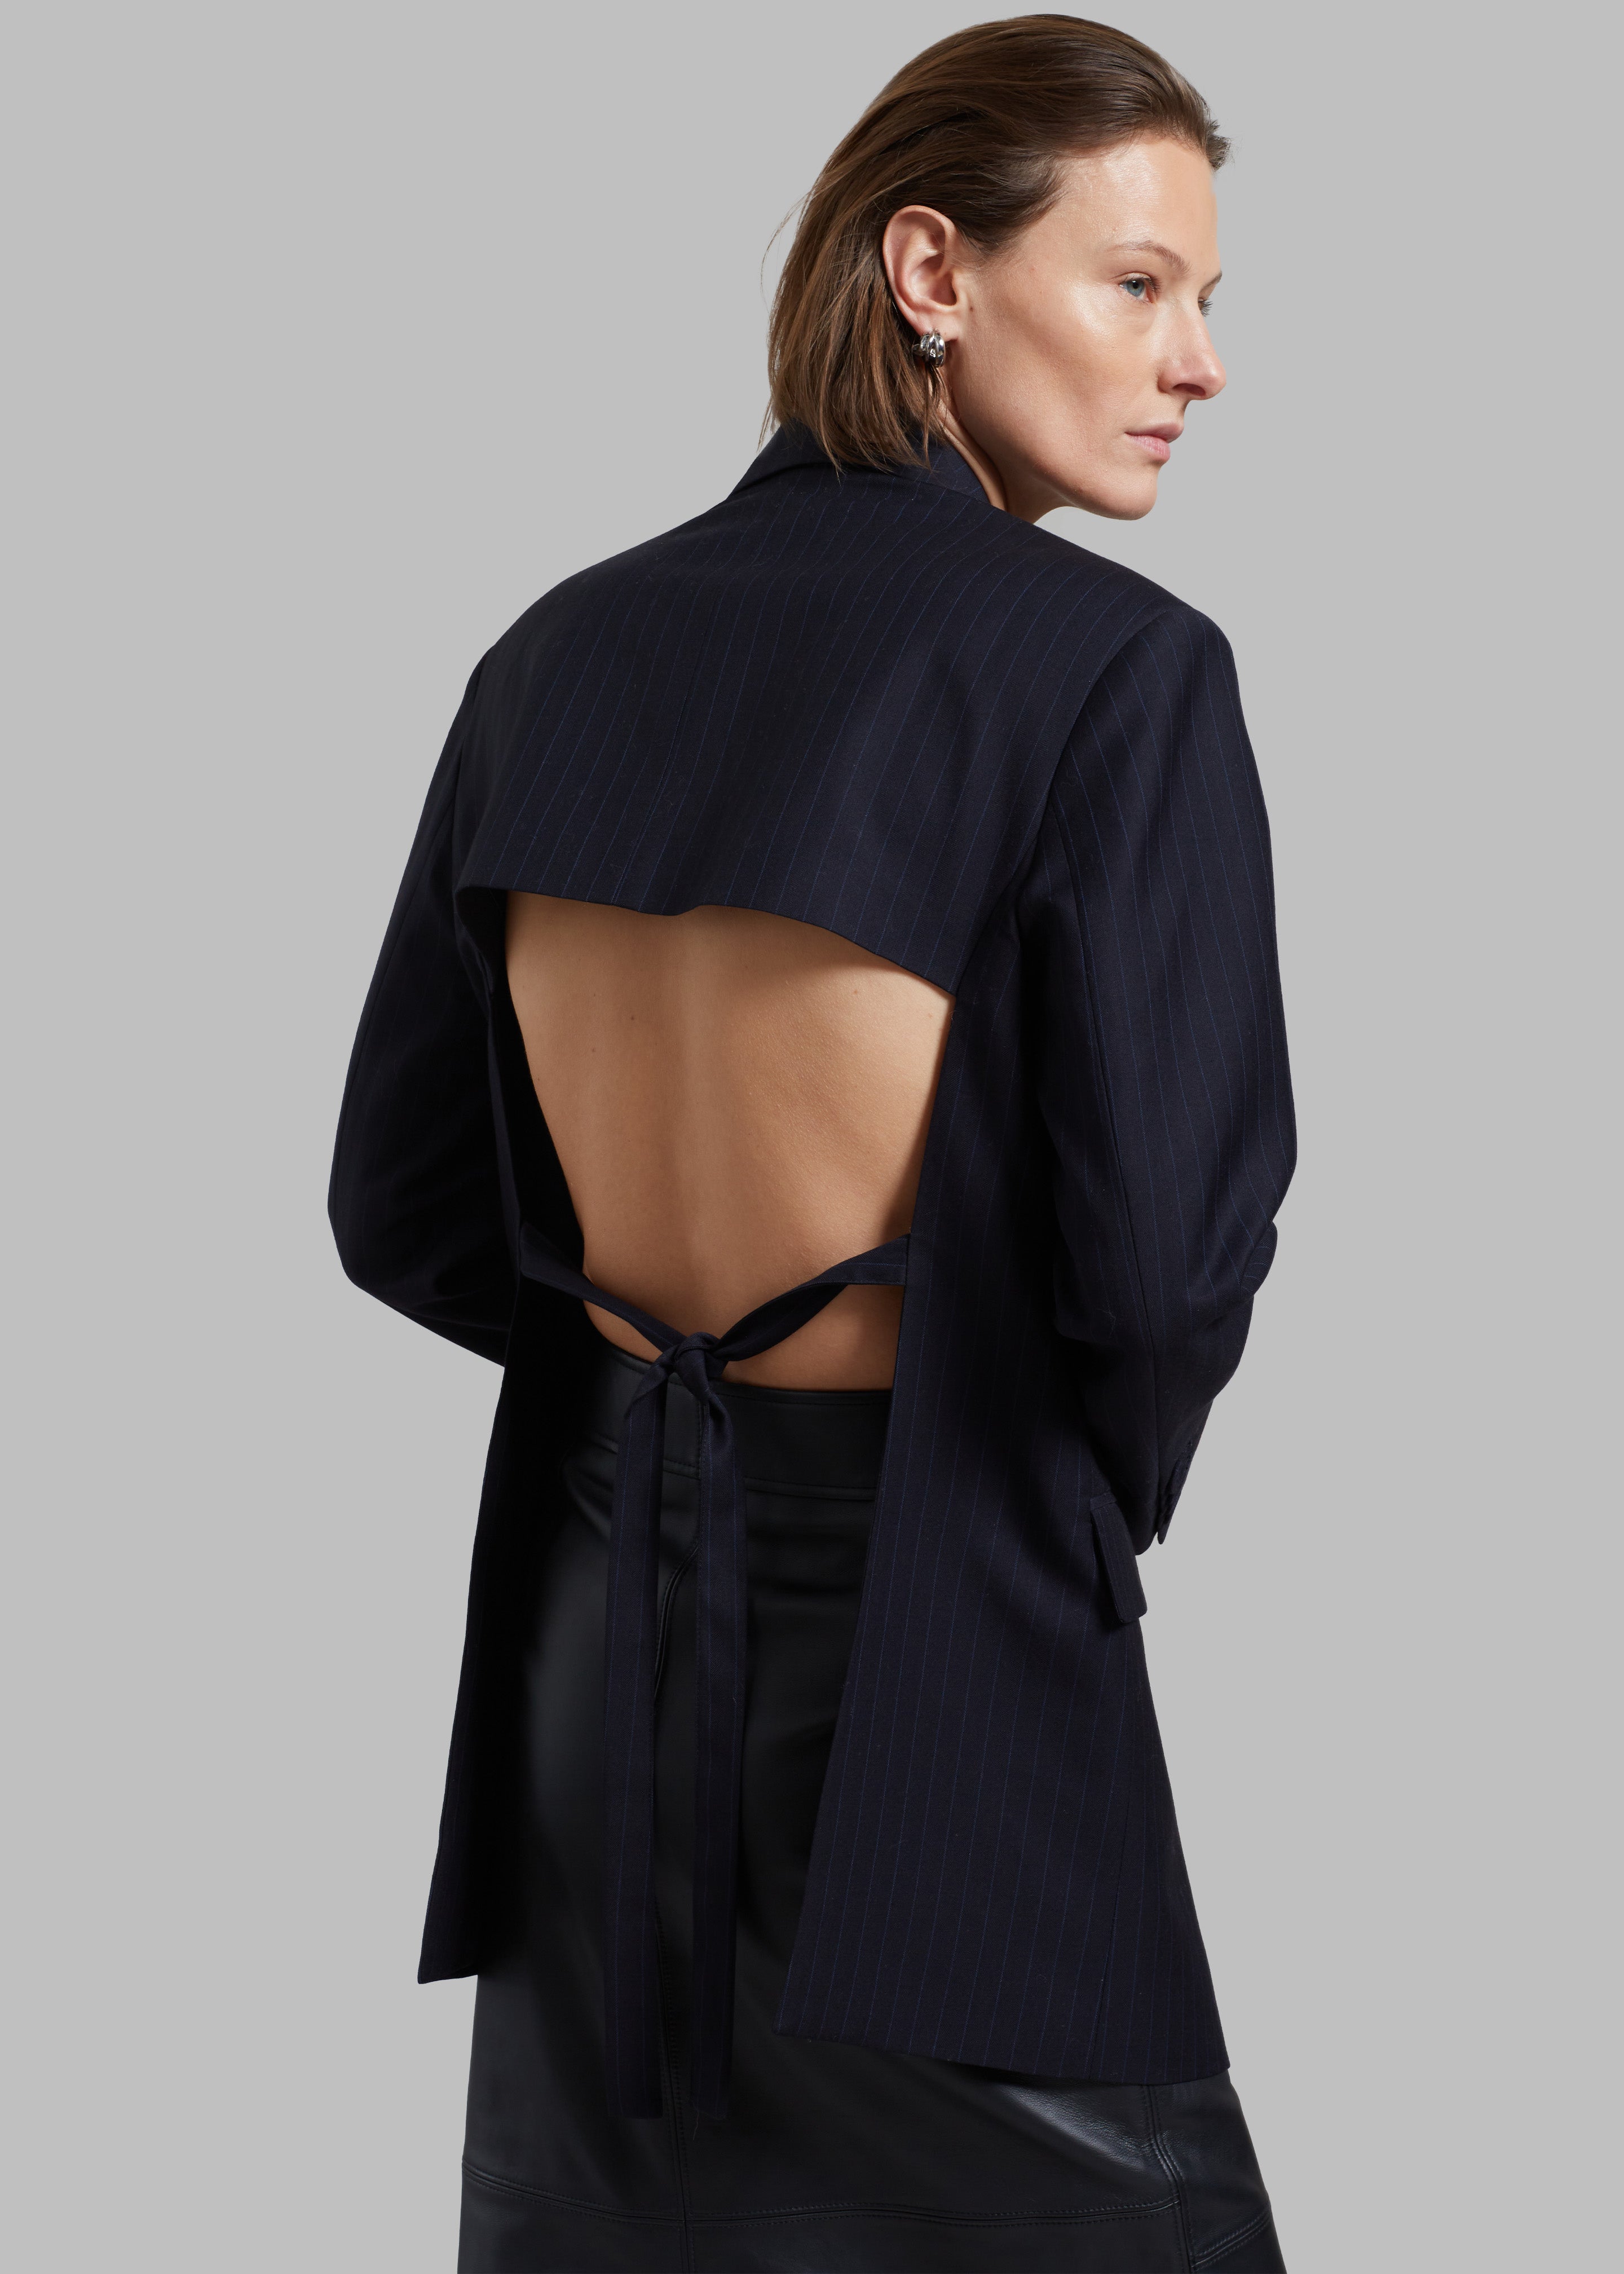 Alexander McQueen Spring 2023 Menswear Collection | Vogue